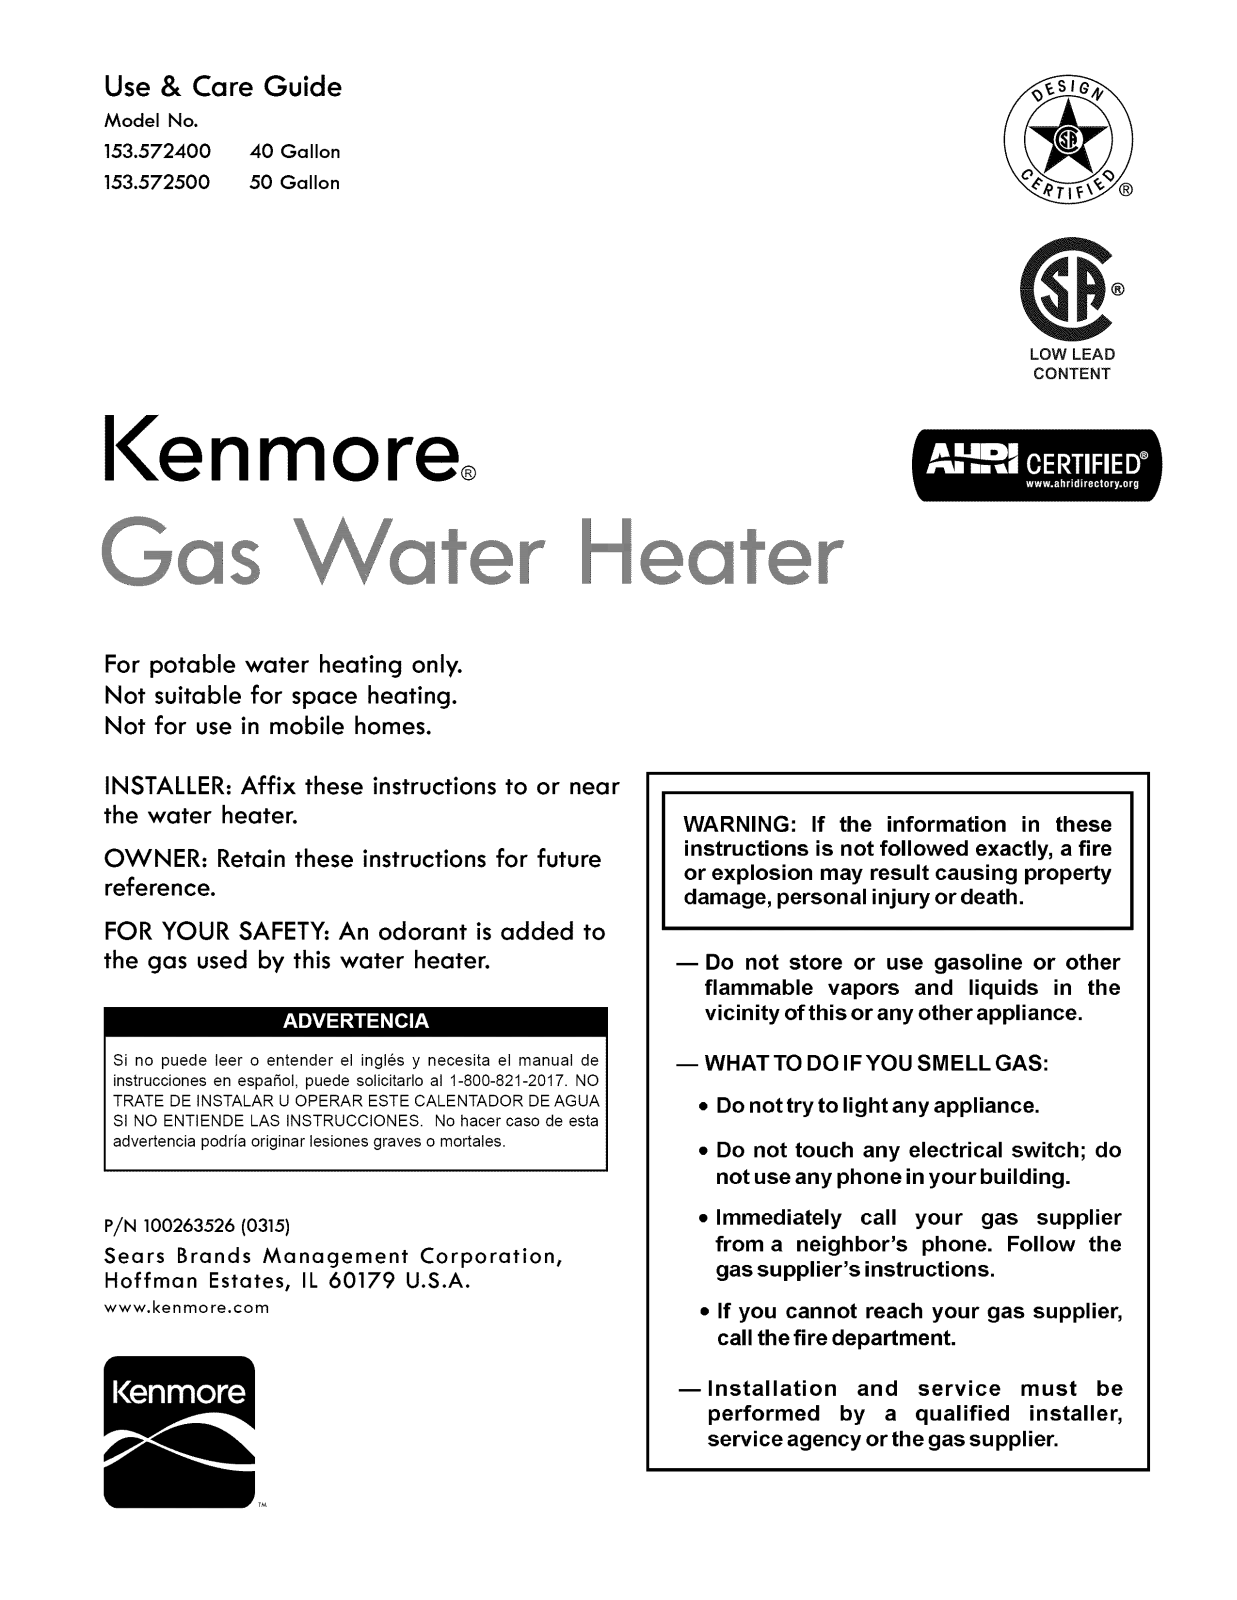 Kenmore 153572500, 153572400 Owner’s Manual